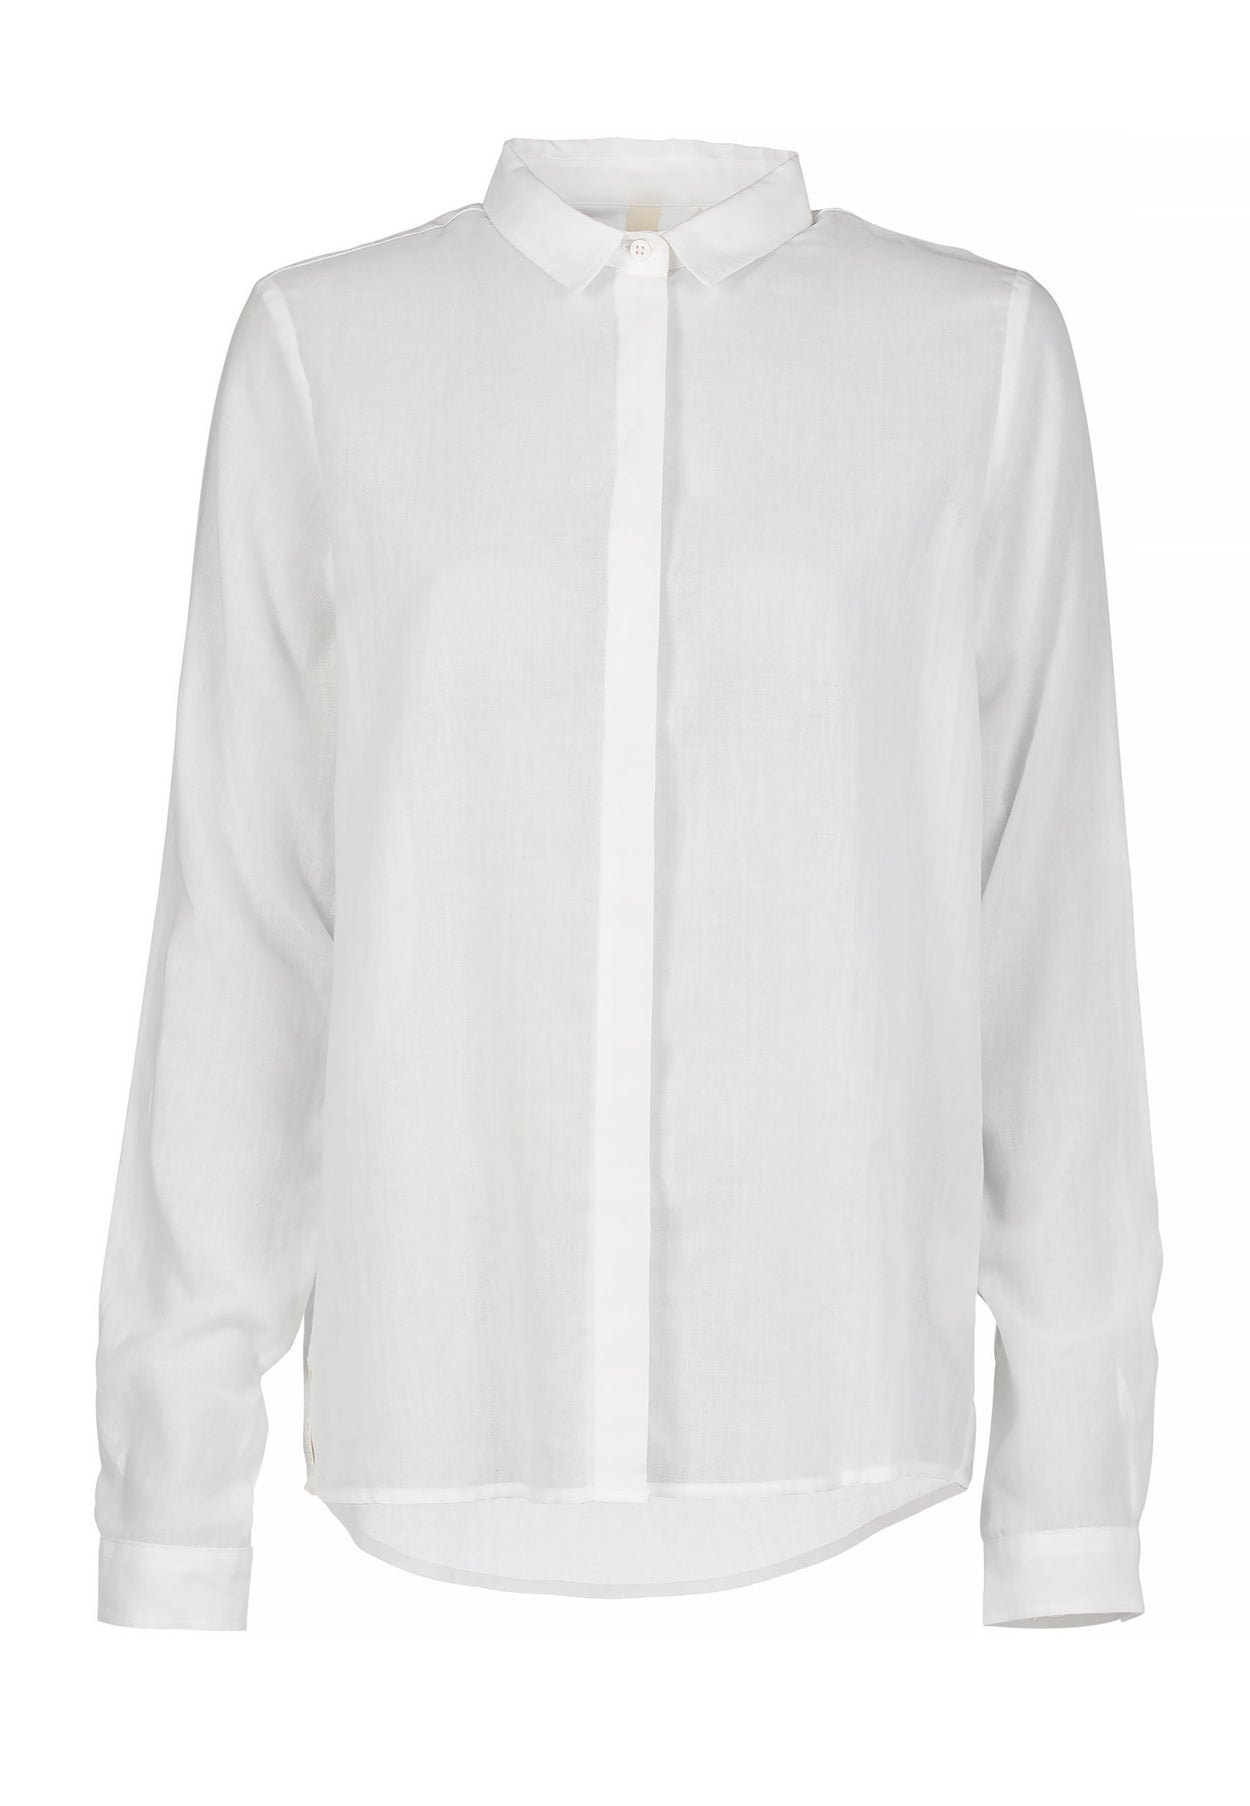 GROBUND Edith skjorten - den klassiske hvide